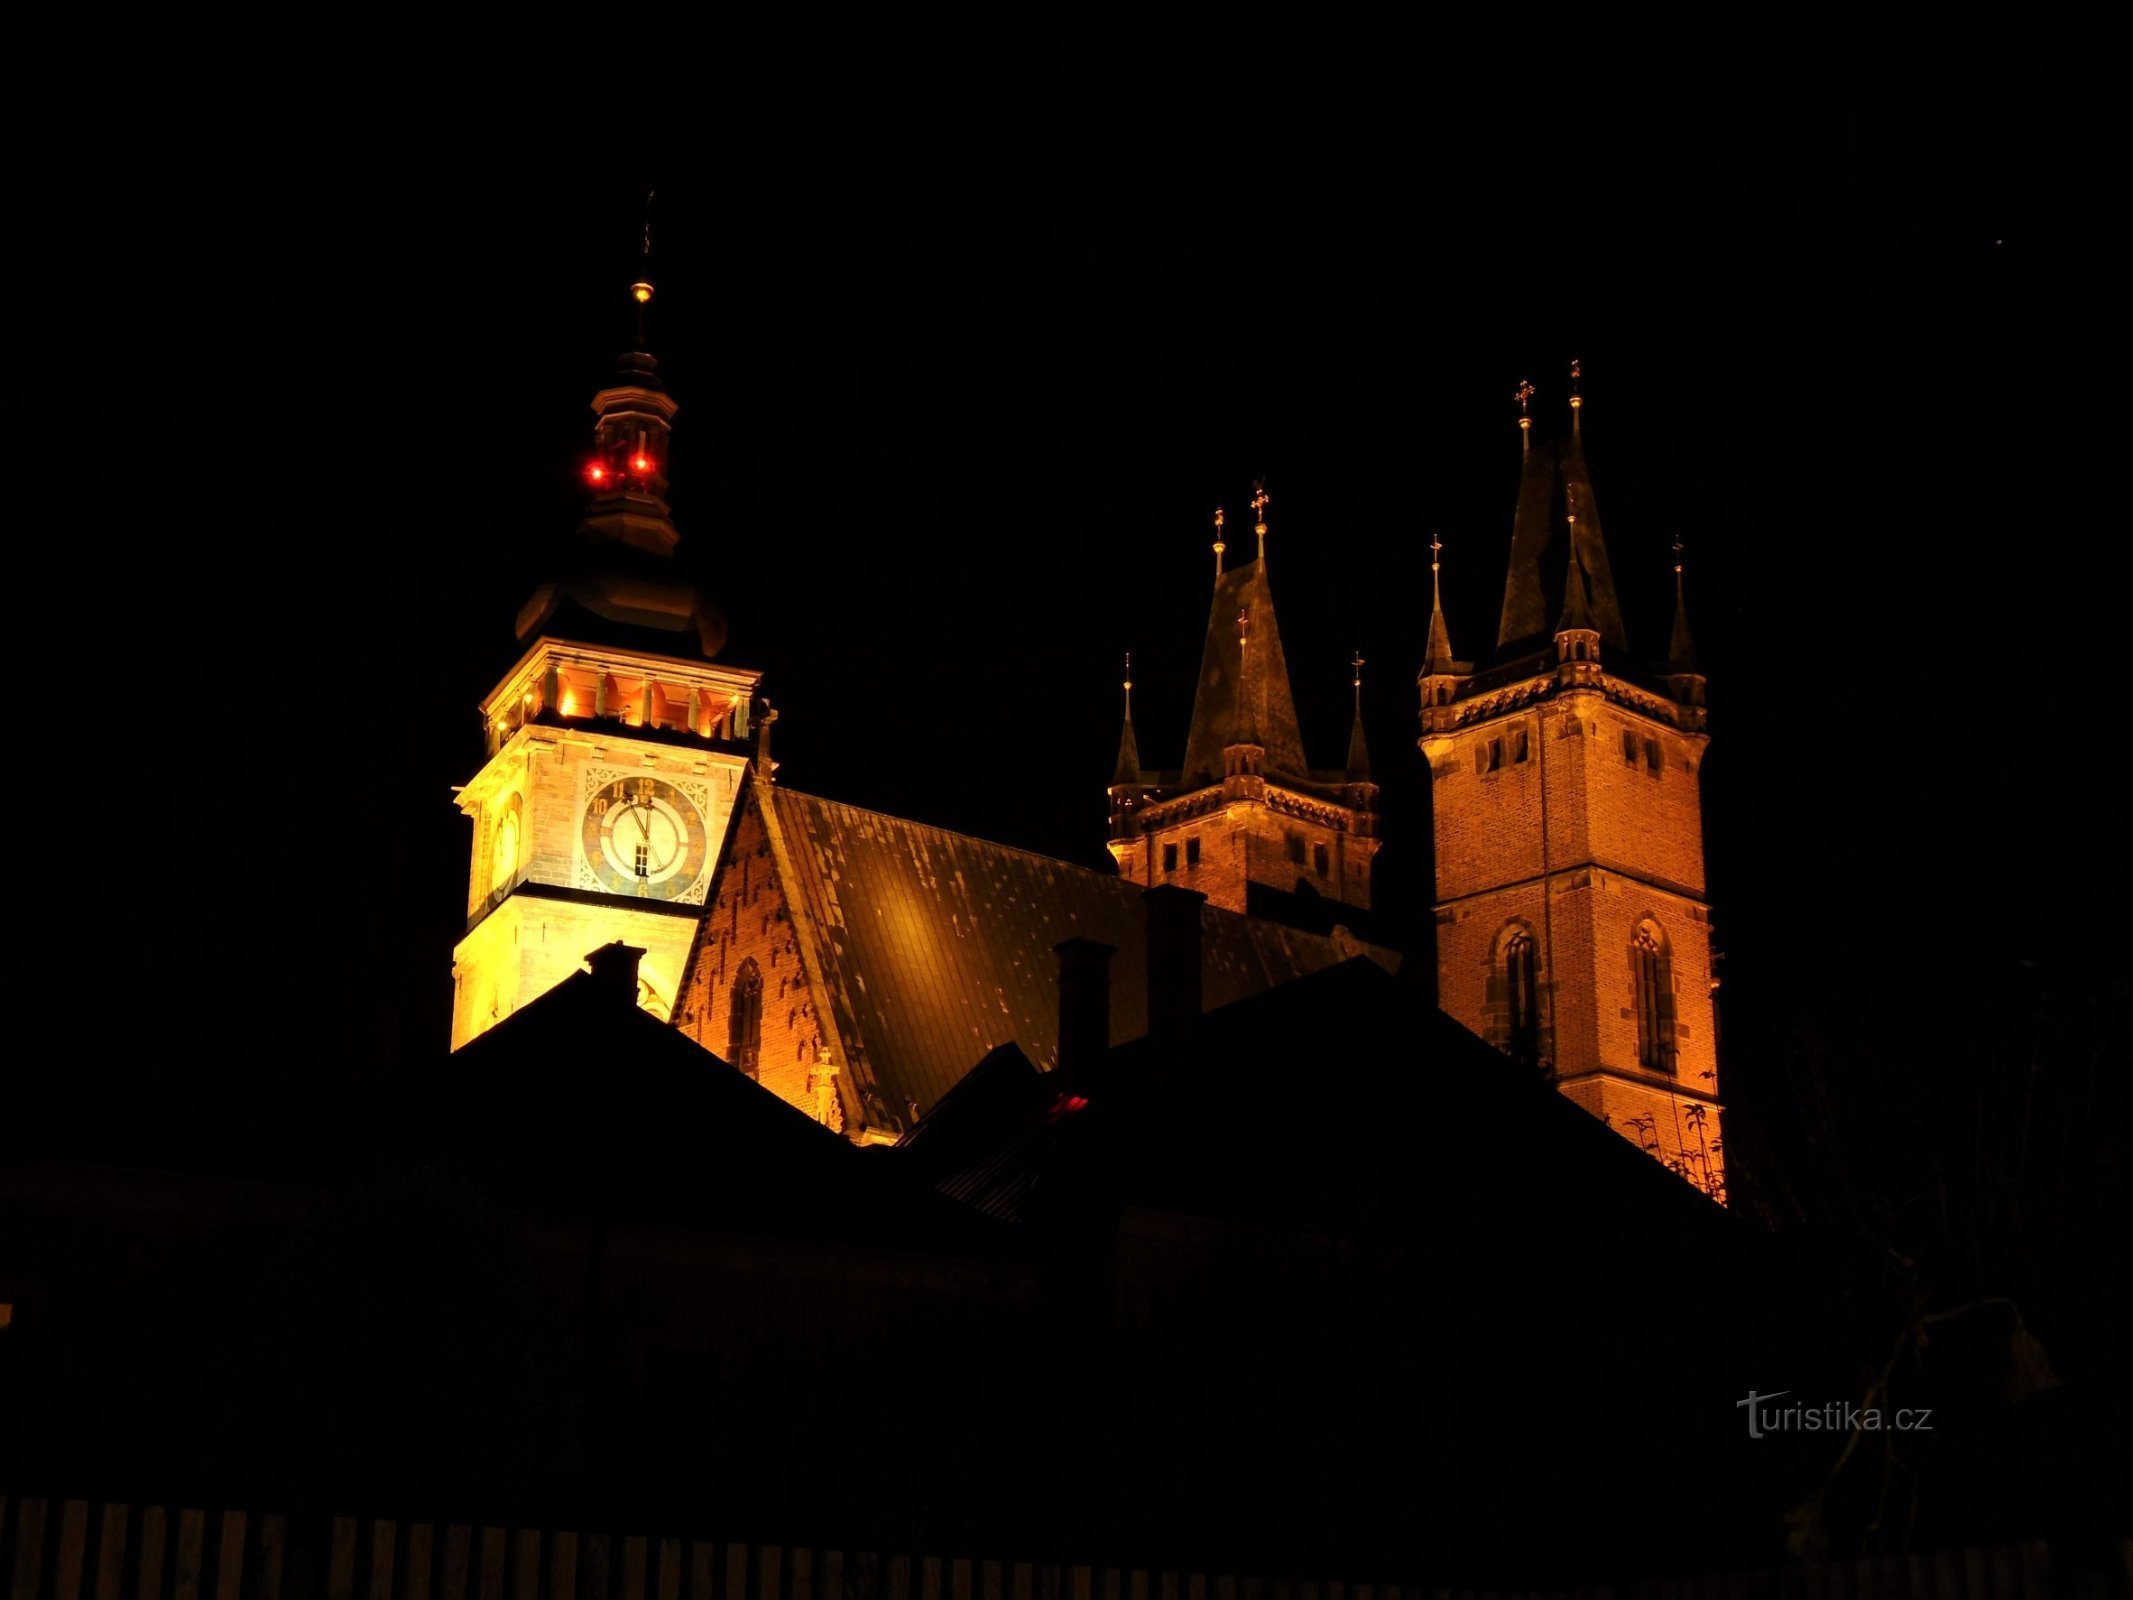 Beli stolp s katedralo sv. Duh (Hradec Králové, 27.9.2020. XNUMX. XNUMX)